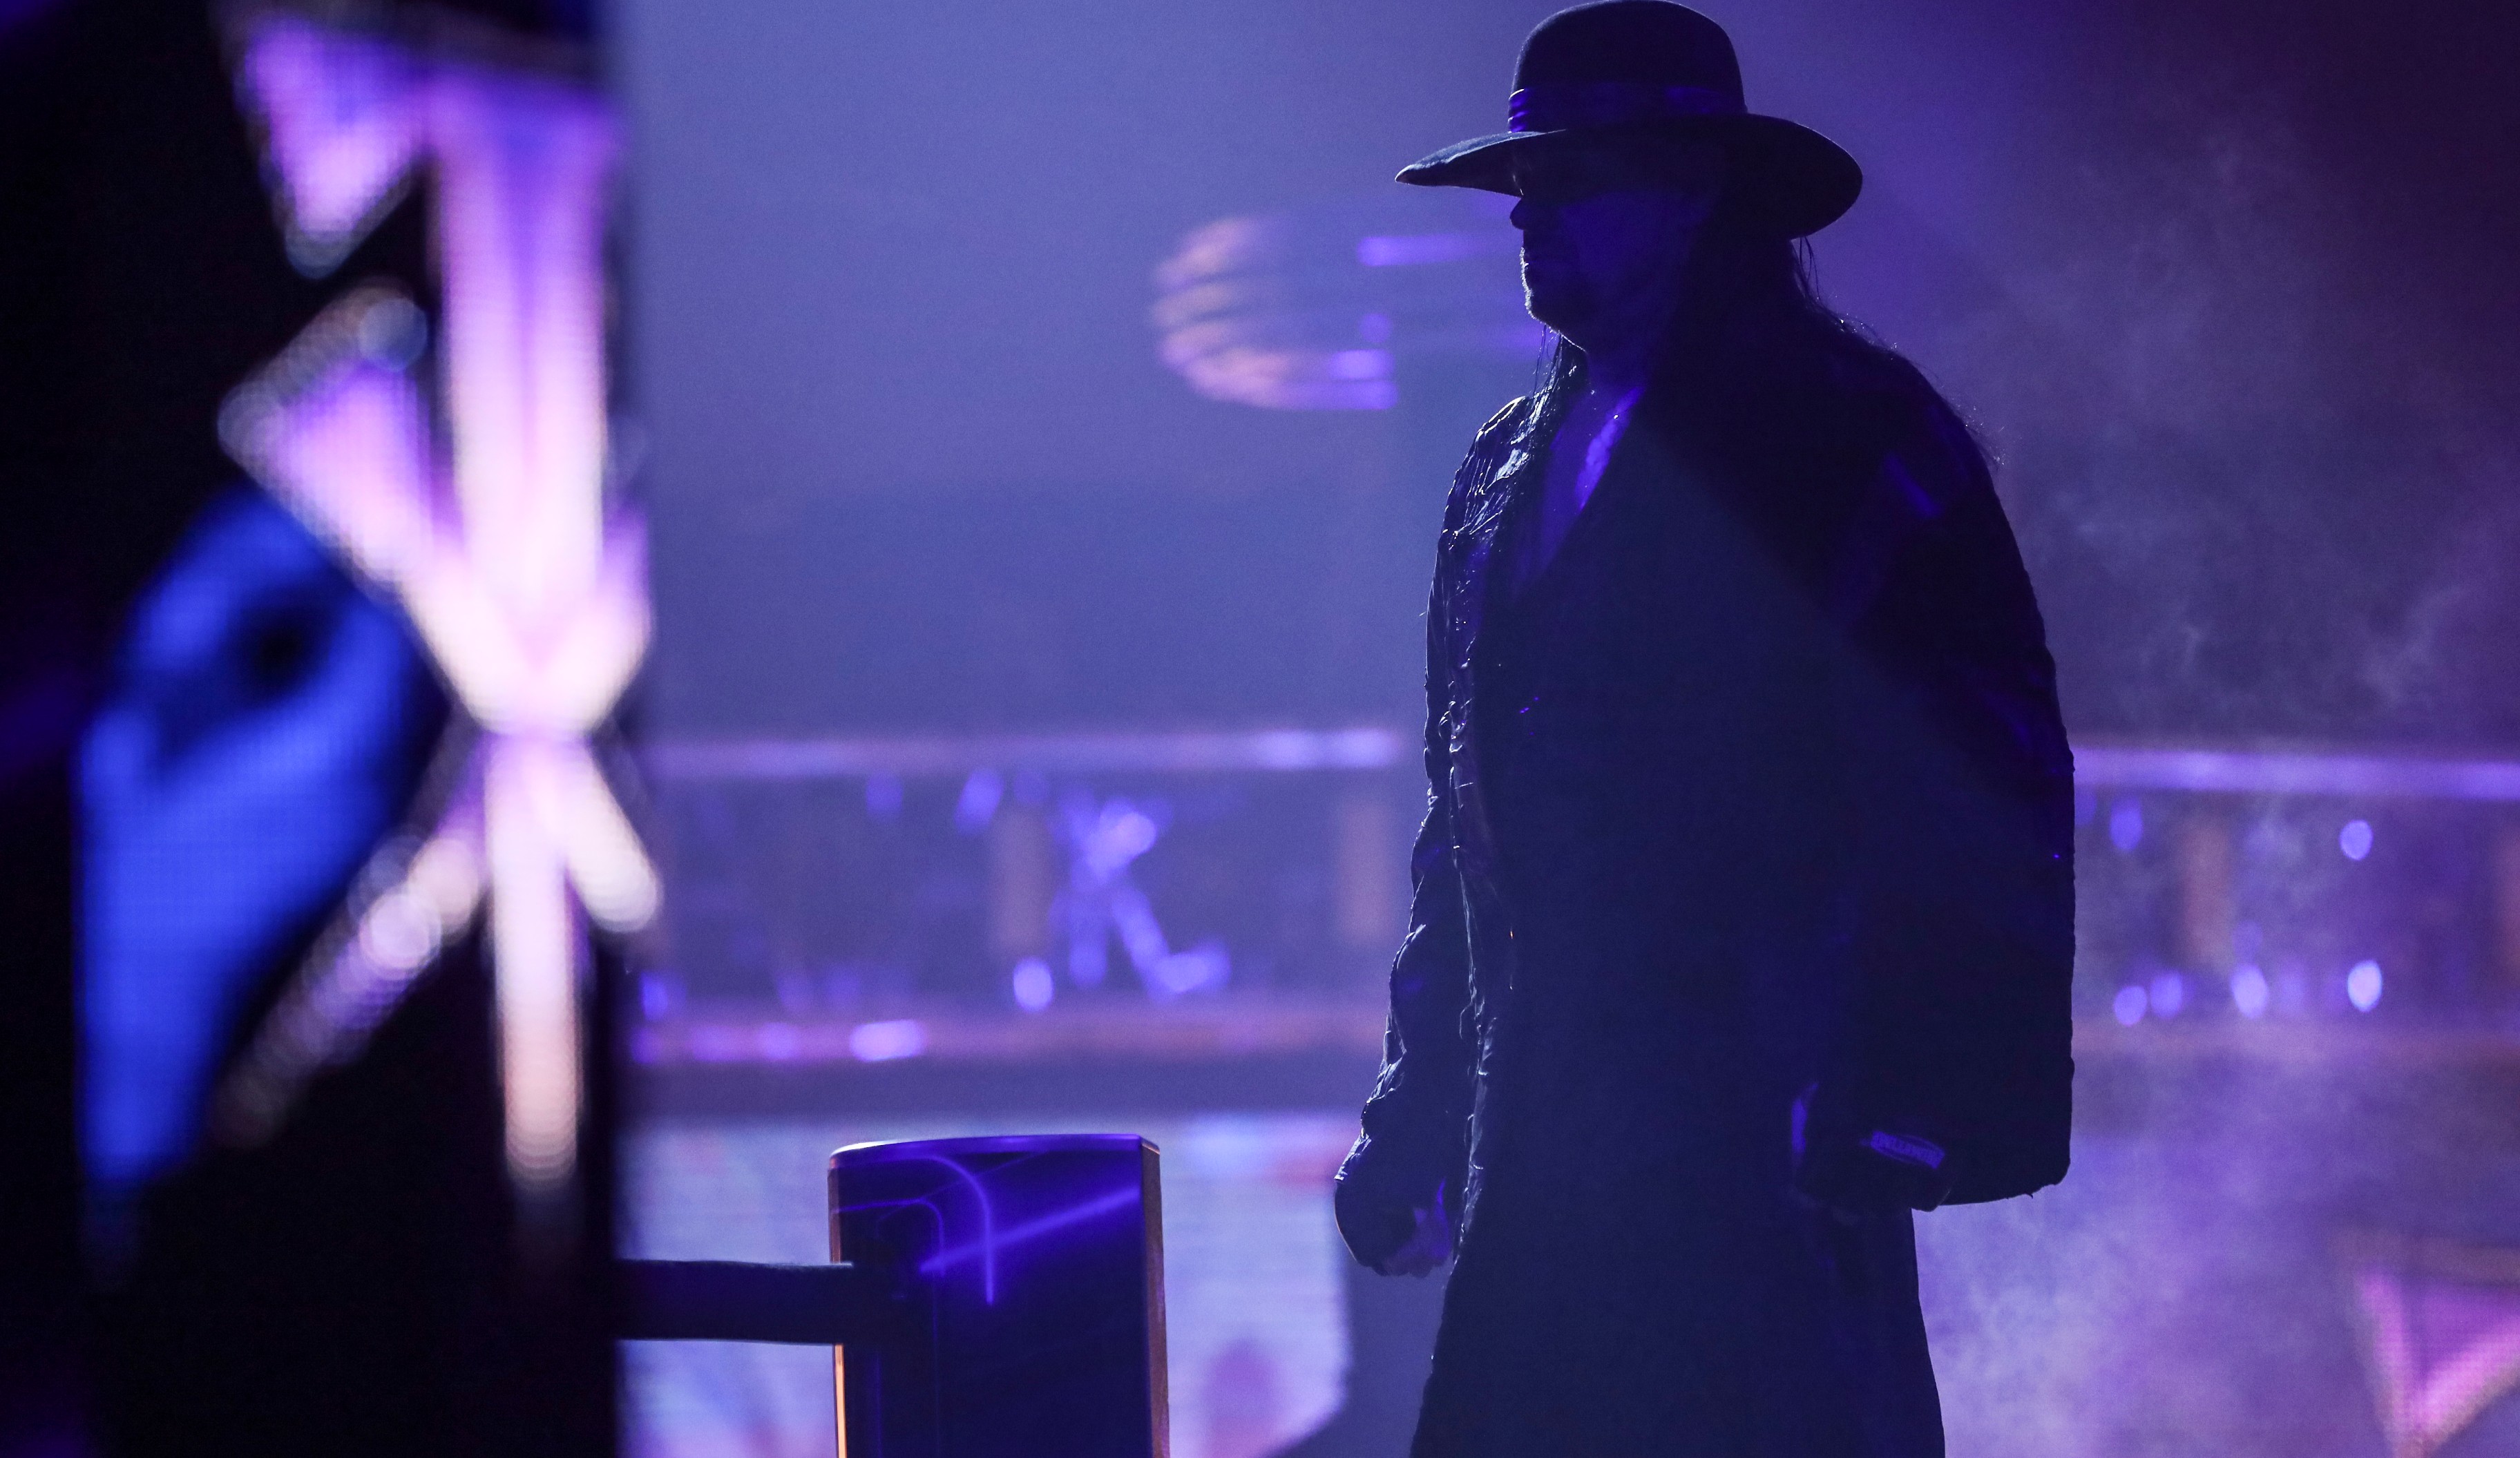 Wir wünschen weiterhin alles Gute und sagen: Danke, Undertaker!